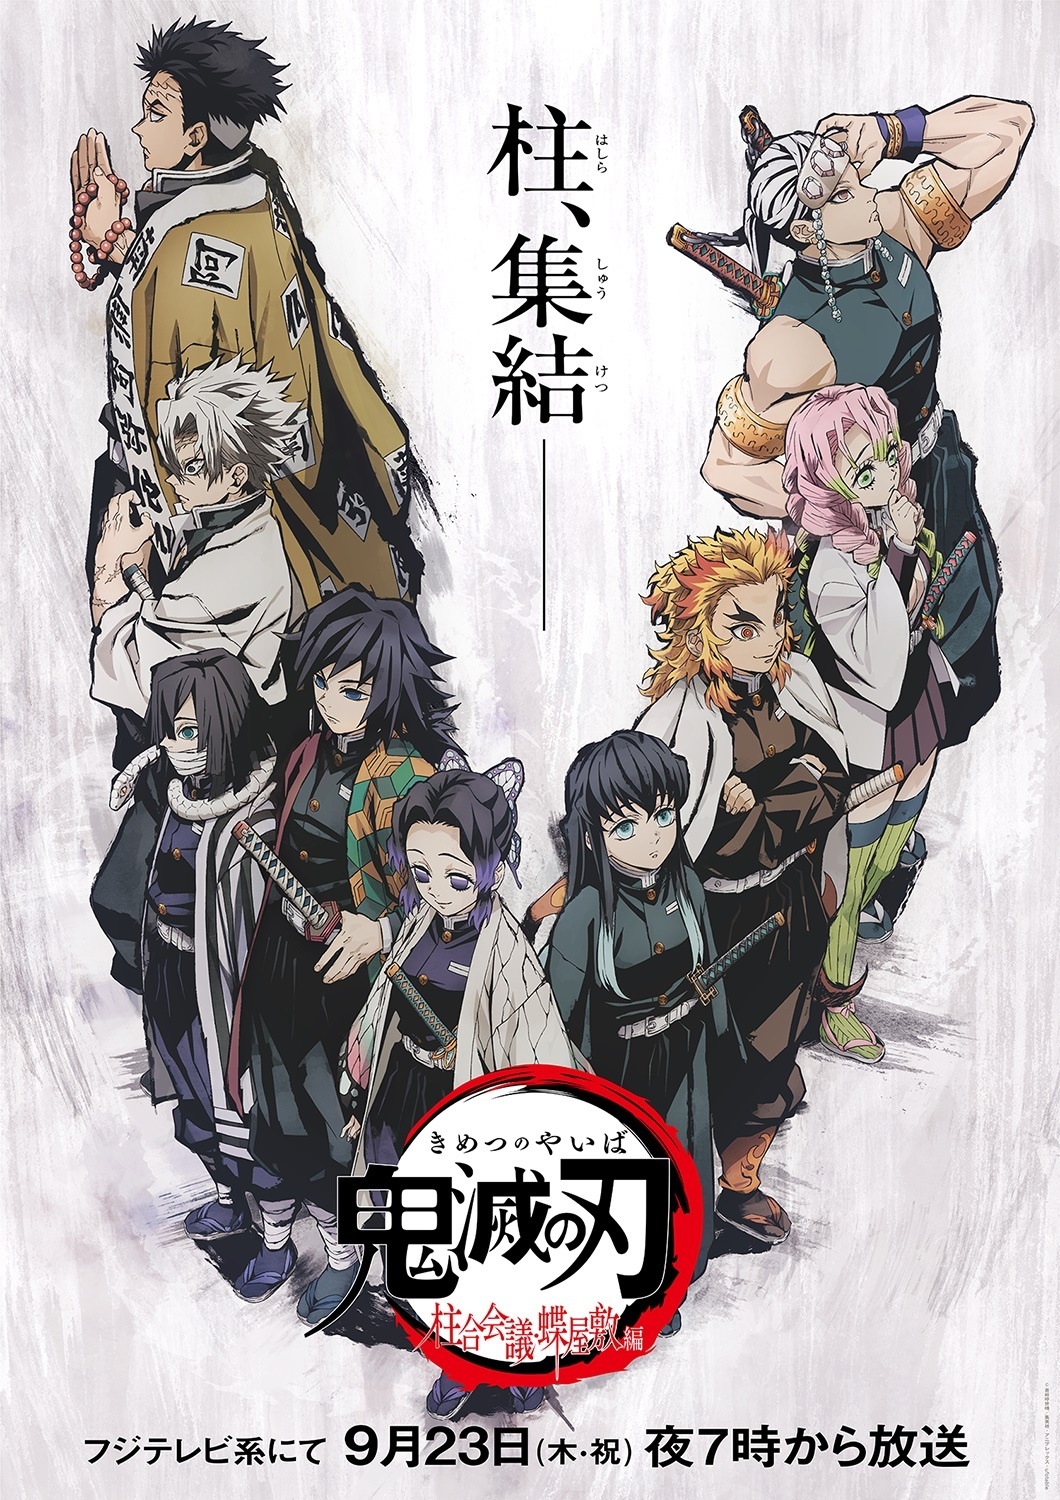 Animes octubre 2021: de Mushoku Tensei a Kimetsu no Yaiba, las